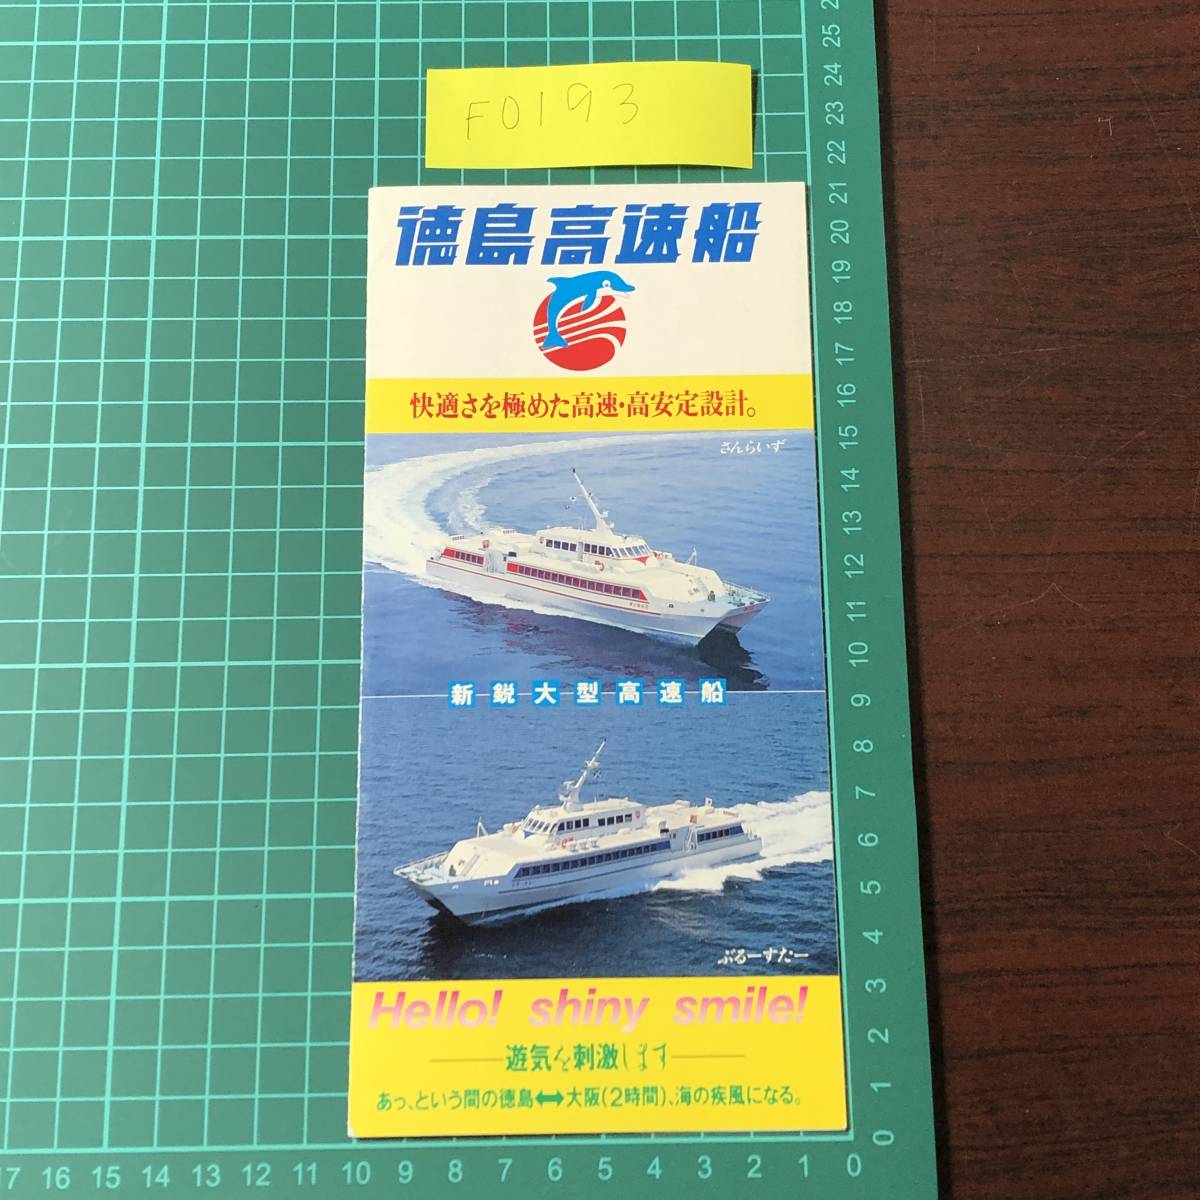  san .....-..- три . super ma Ran CP-30 MKⅢ Tokushima высокая скорость судно новый . большой Tokushima ~ Osaka каталог проспект [F0193]